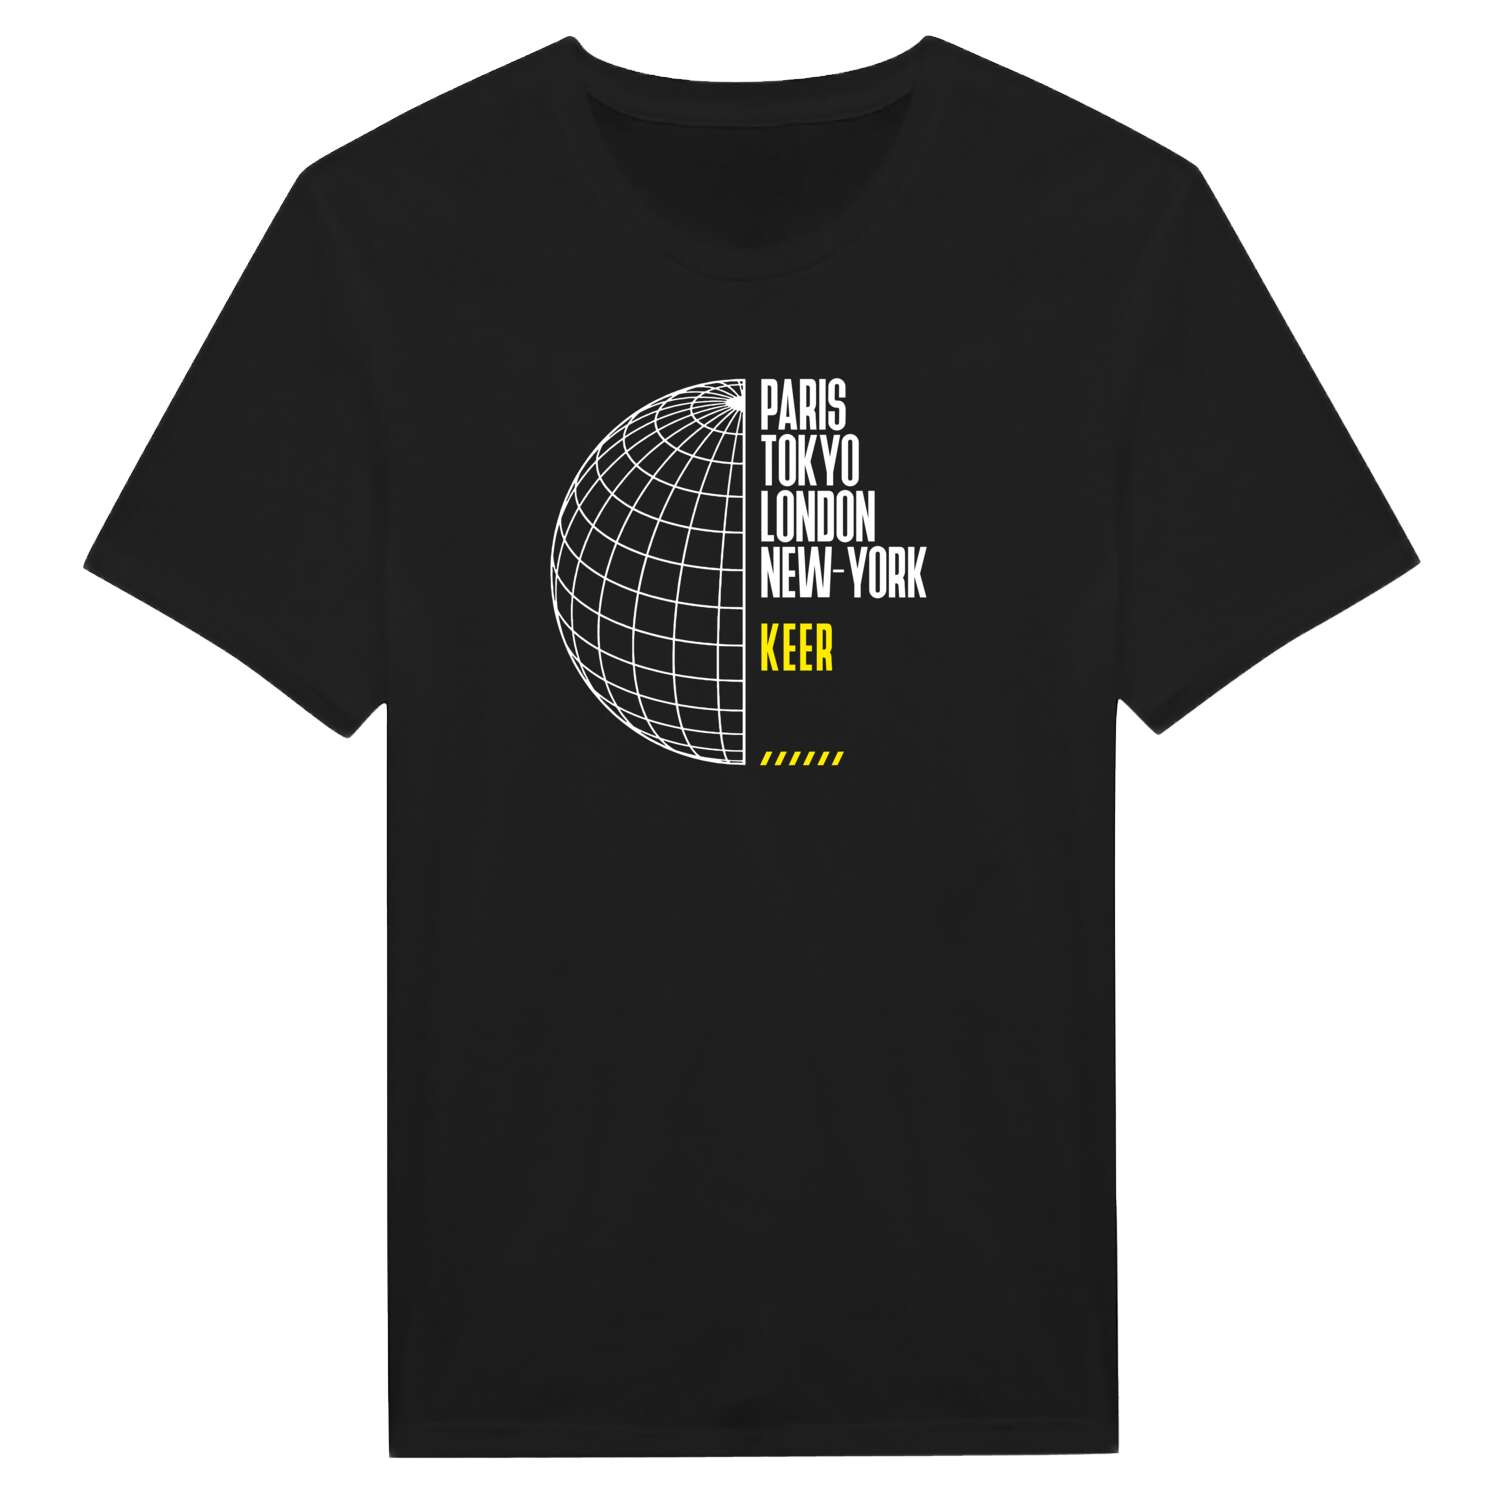 Keer T-Shirt »Paris Tokyo London«